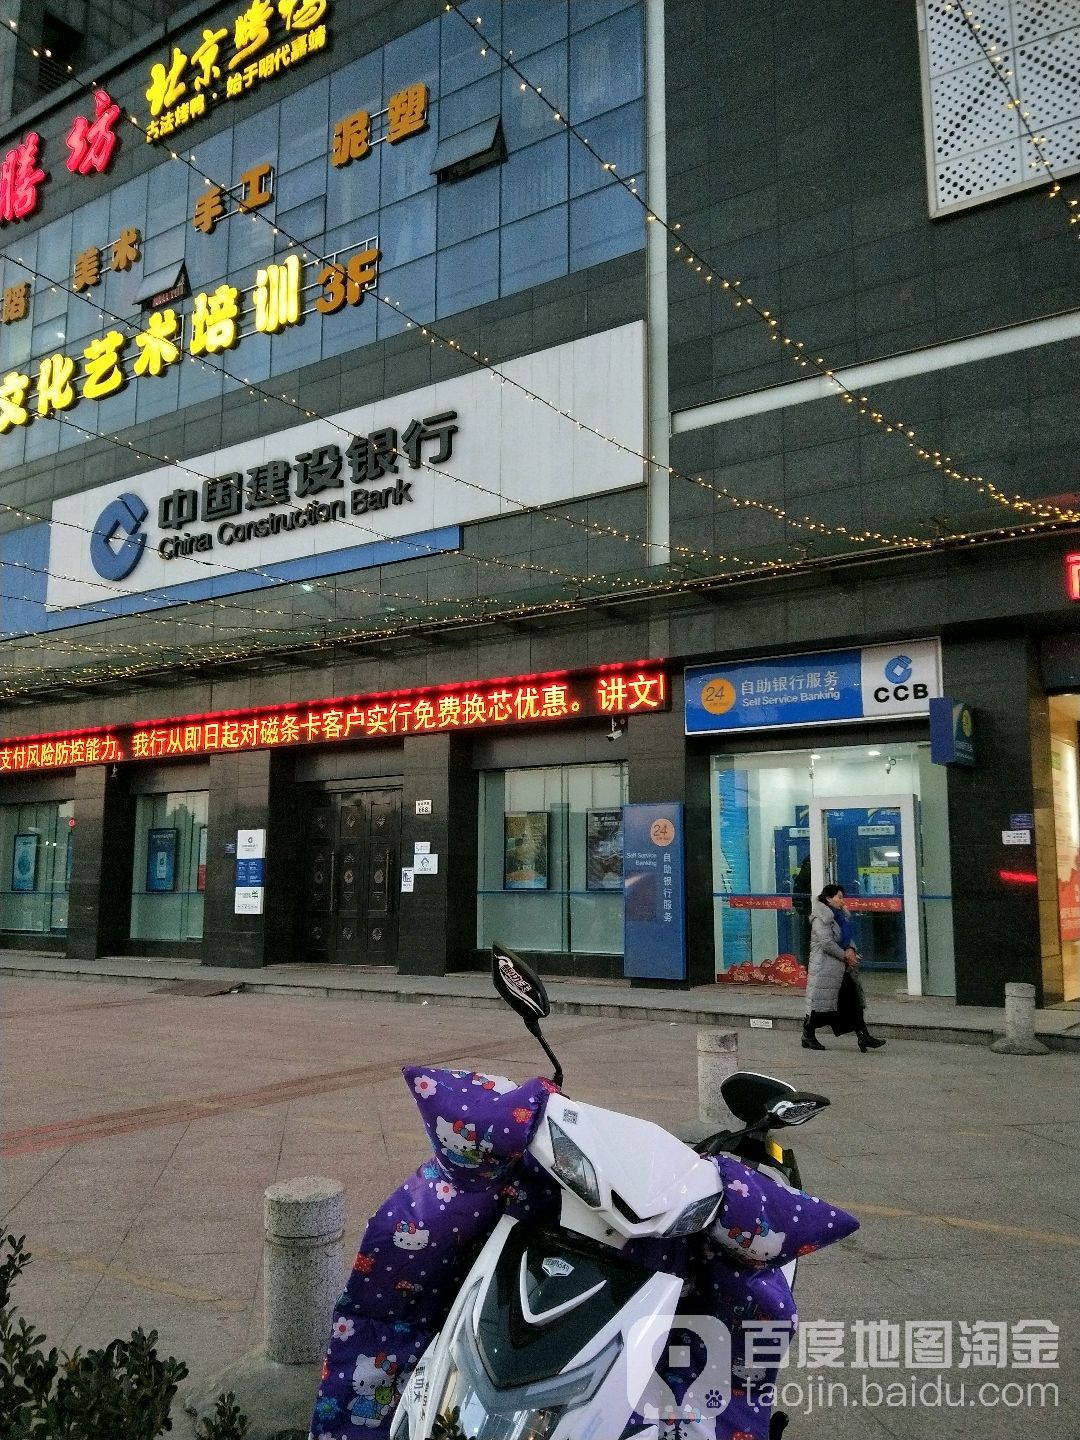 中國建設銀行24小時自助銀行(觀海衛支行)